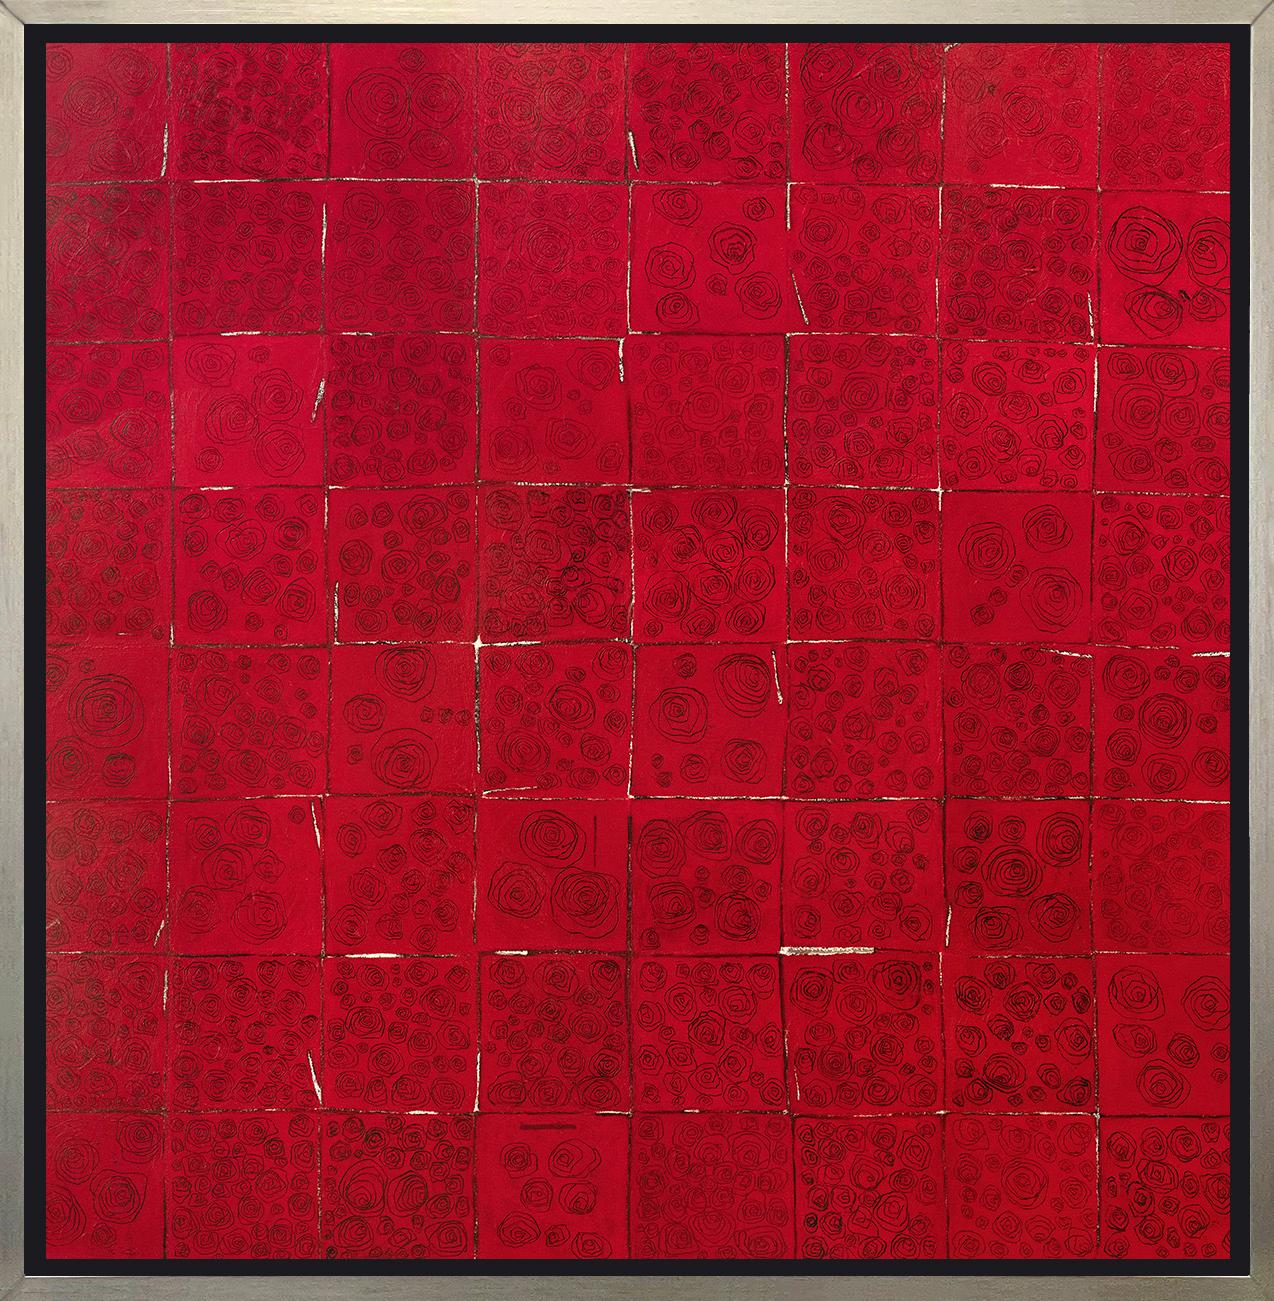 Abstract Print Sofie Swann - « Red Roses for Warhol », imprimé giclée encadré en édition limitée, 101,6 x 101,6 cm